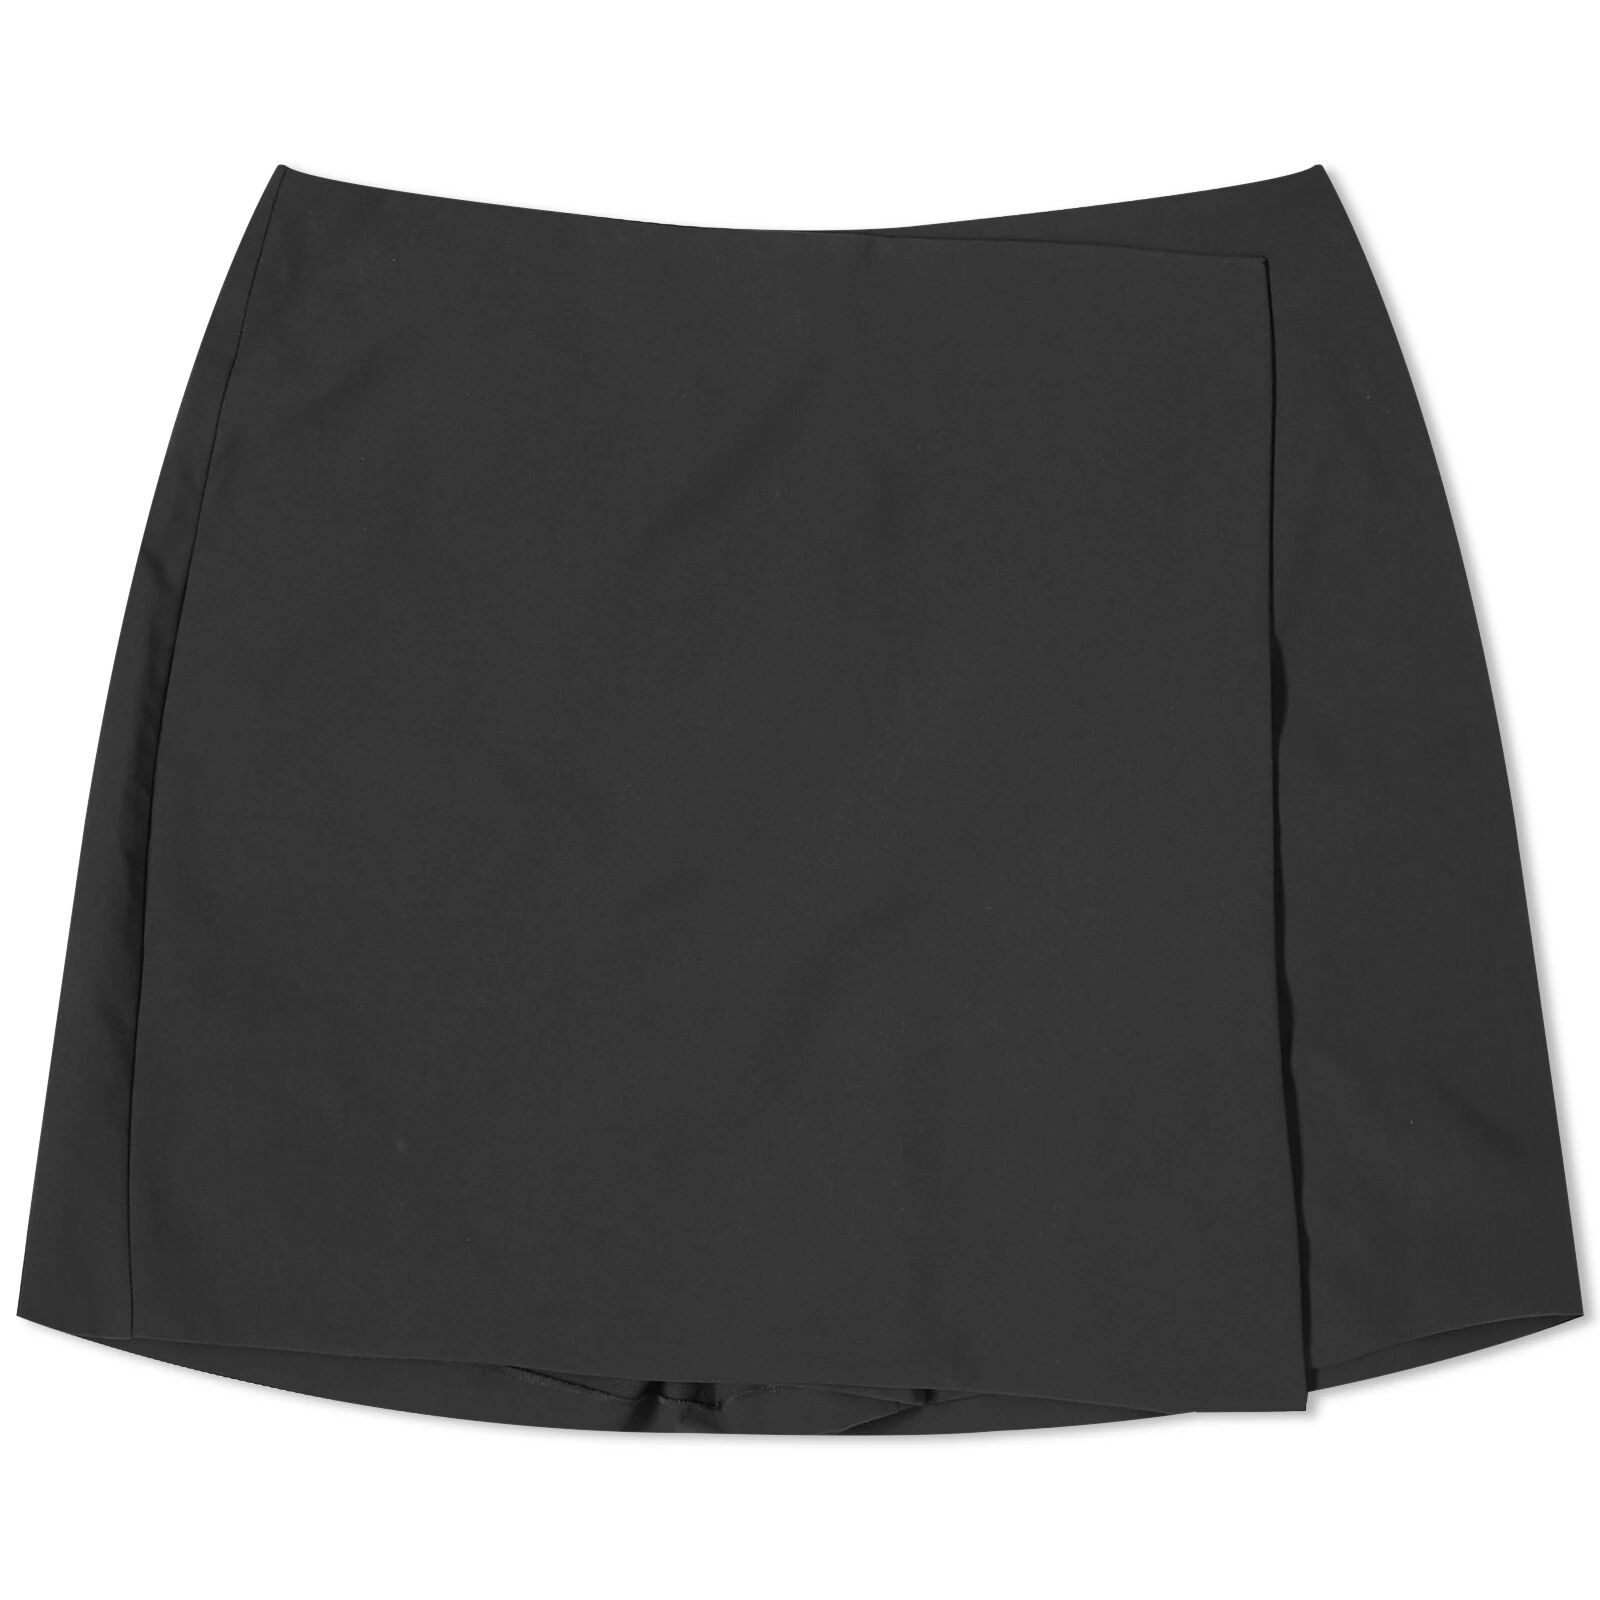 Moncler Women's Shorts Skirt in Black, Size UK 8